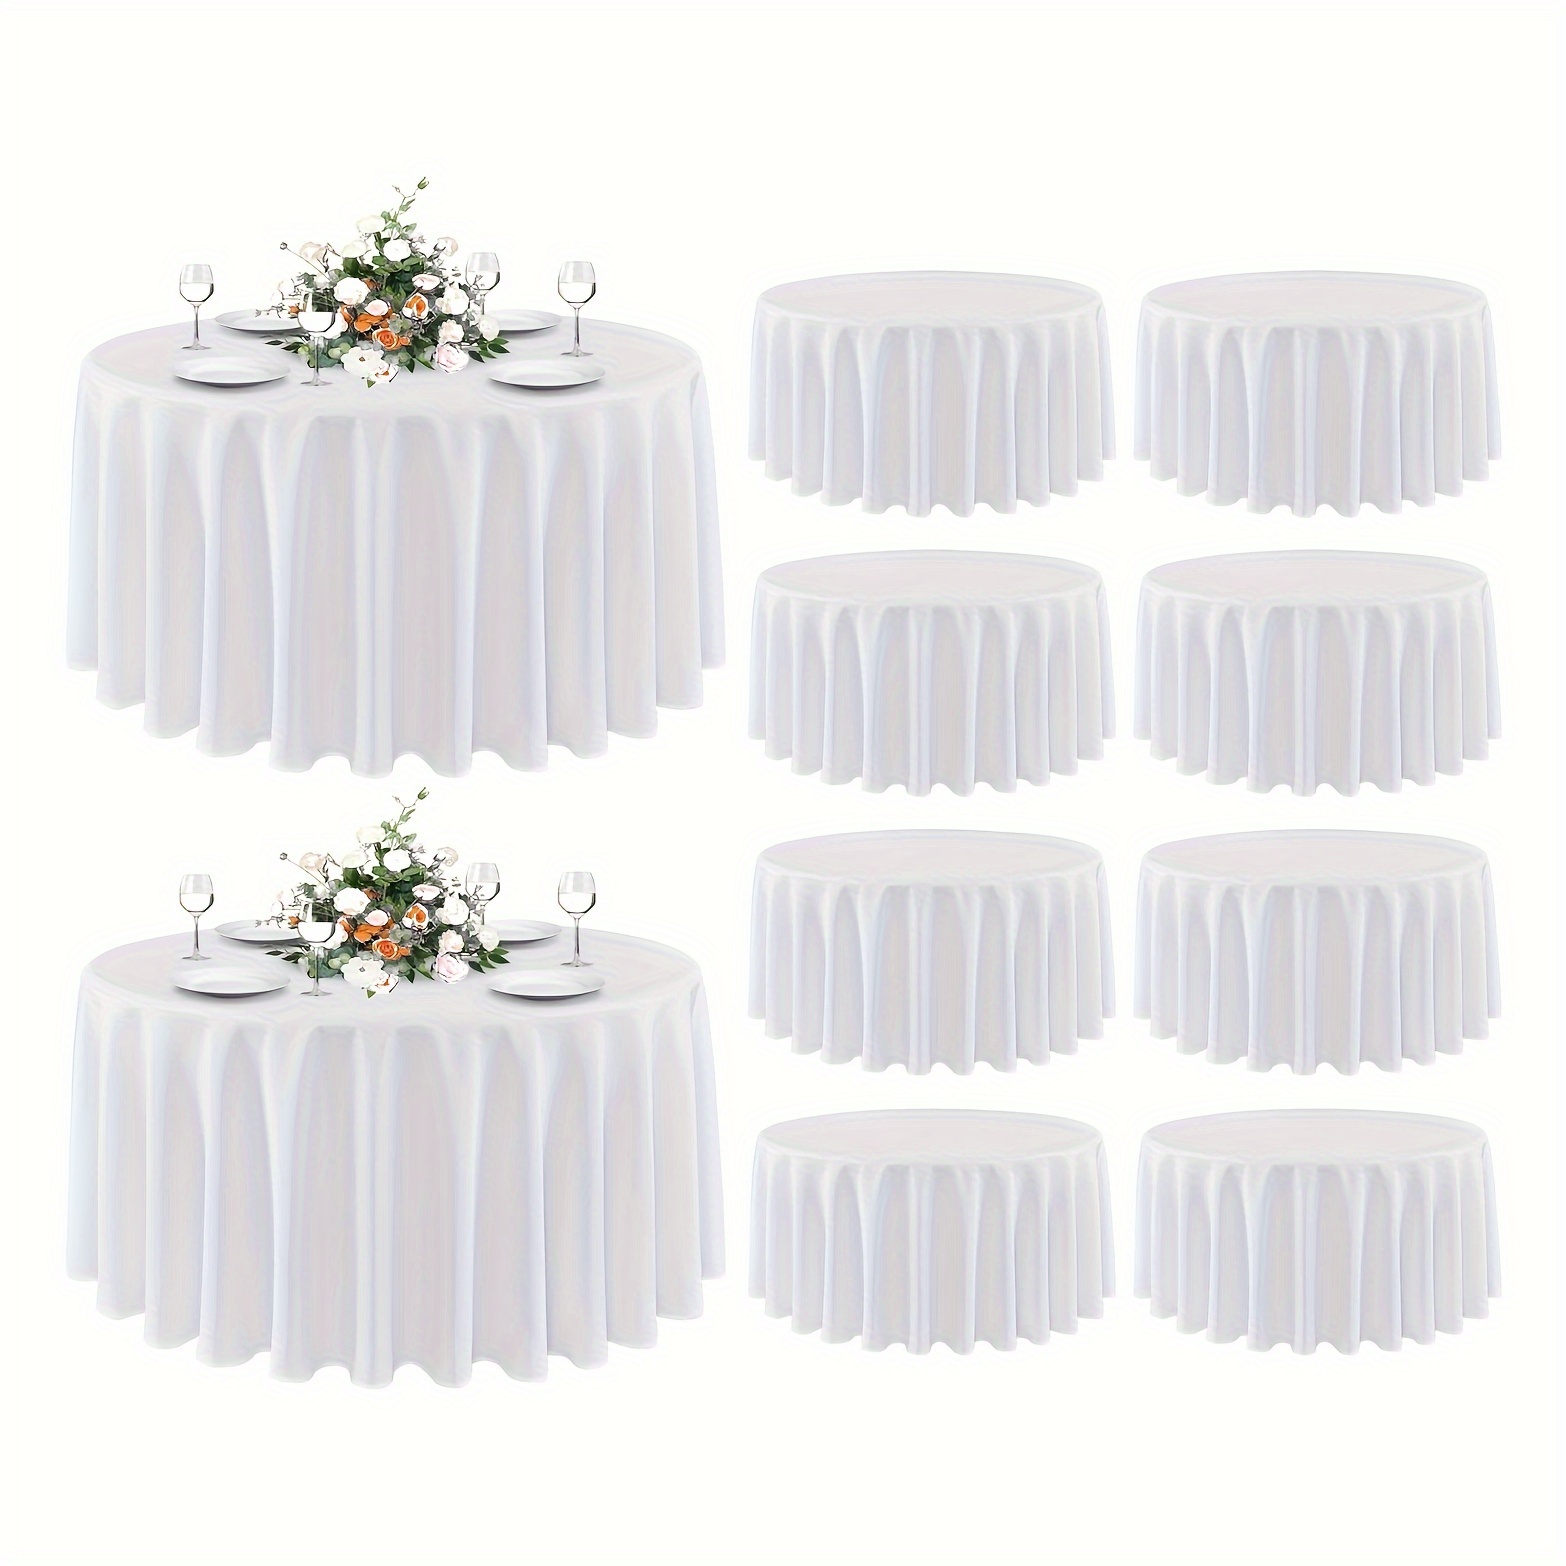 

Paquet de 10 nappes rondes blanches de 90 po – Polyester, résistantes aux taches et aux plis, housses lavables pour les repas, les buffets, le camping